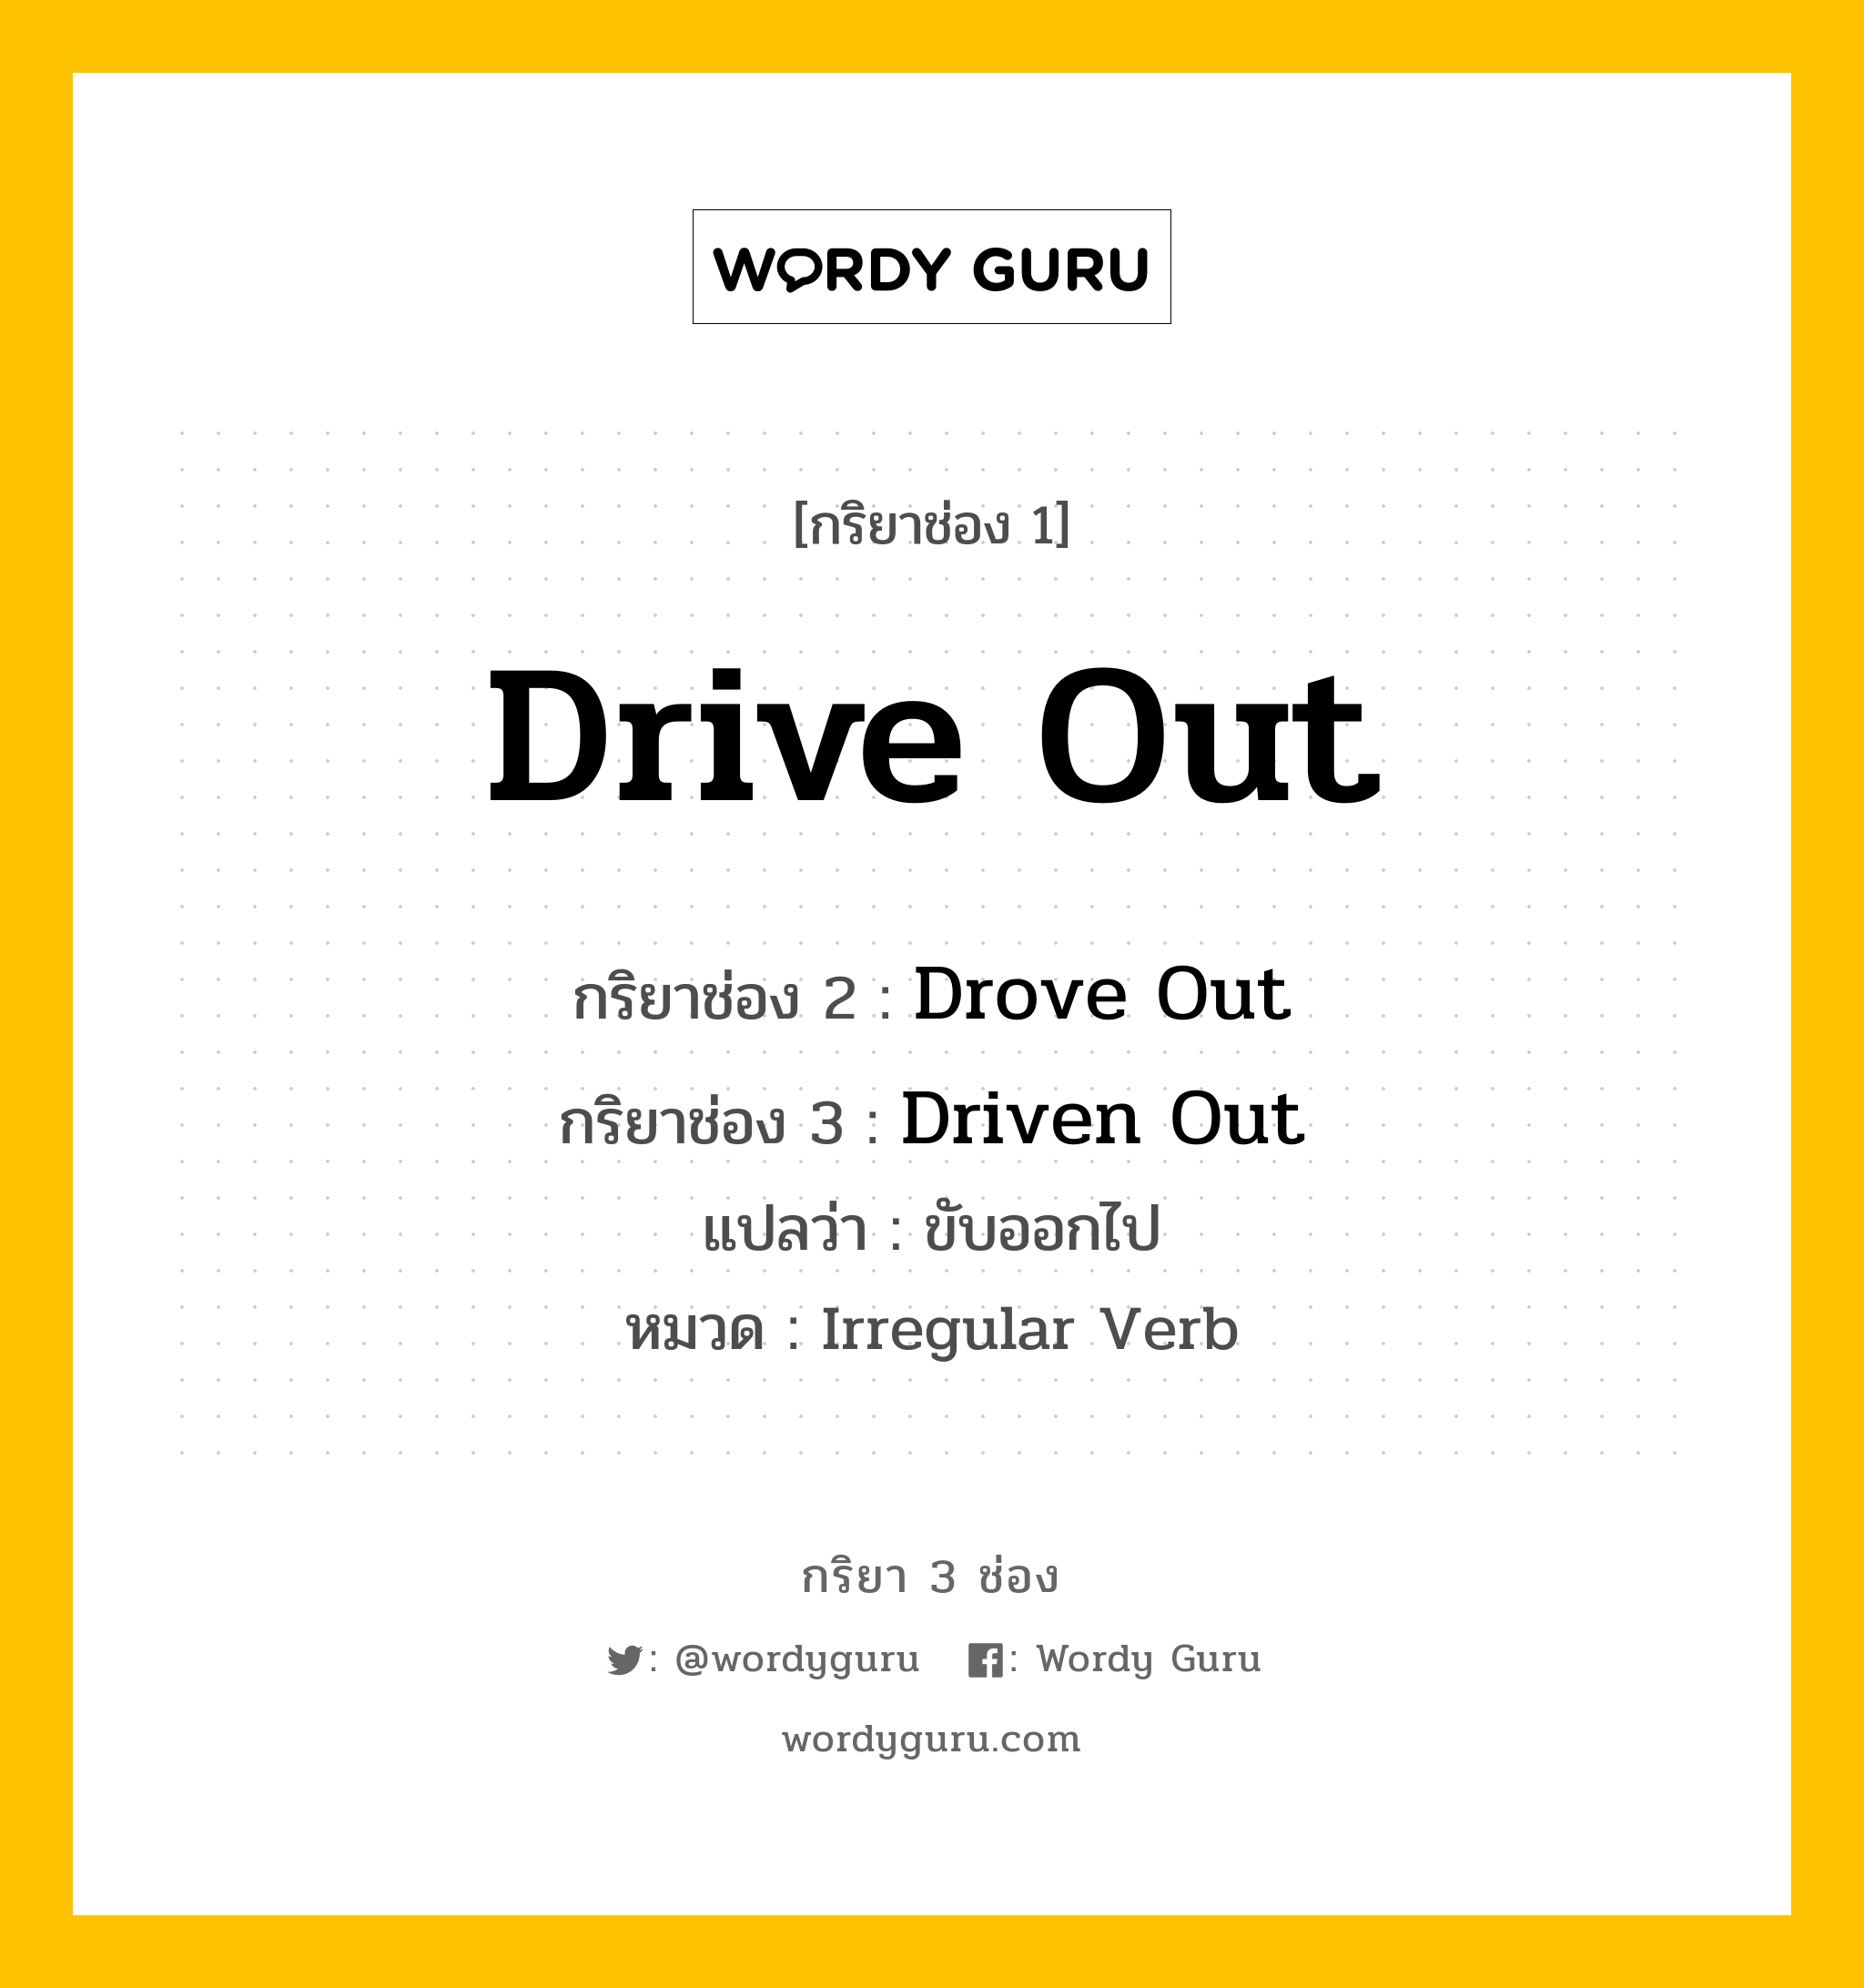 กริยา 3 ช่อง: Drive Out ช่อง 2 Drive Out ช่อง 3 คืออะไร, กริยาช่อง 1 Drive Out กริยาช่อง 2 Drove Out กริยาช่อง 3 Driven Out แปลว่า ขับออกไป หมวด Irregular Verb หมวด Irregular Verb